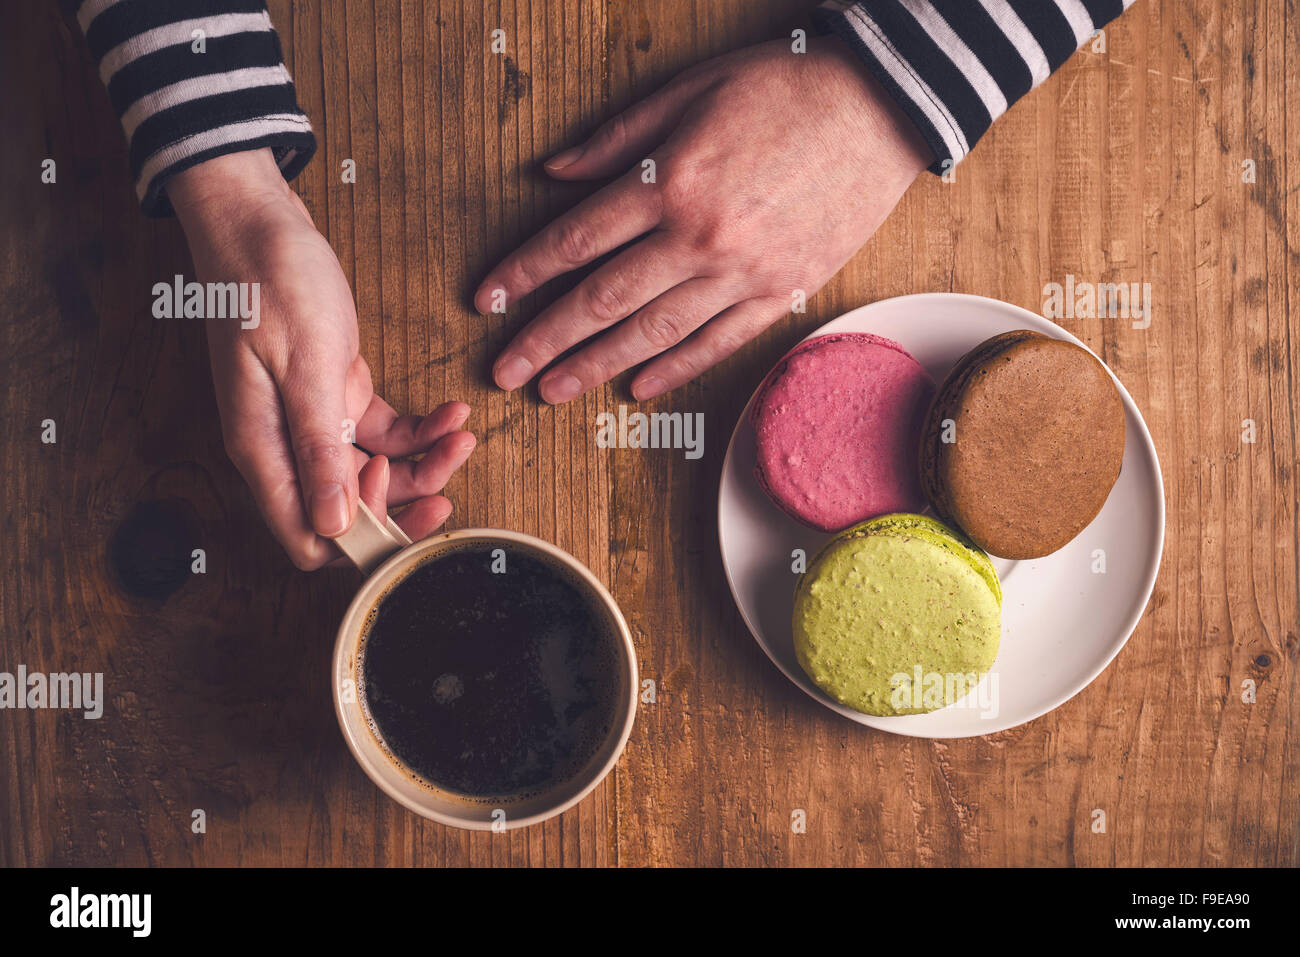 Café et biscuits macaron sur la table le matin, femme hand holding cup avec boisson chaude, vue d'en haut, aux couleurs rétro Banque D'Images